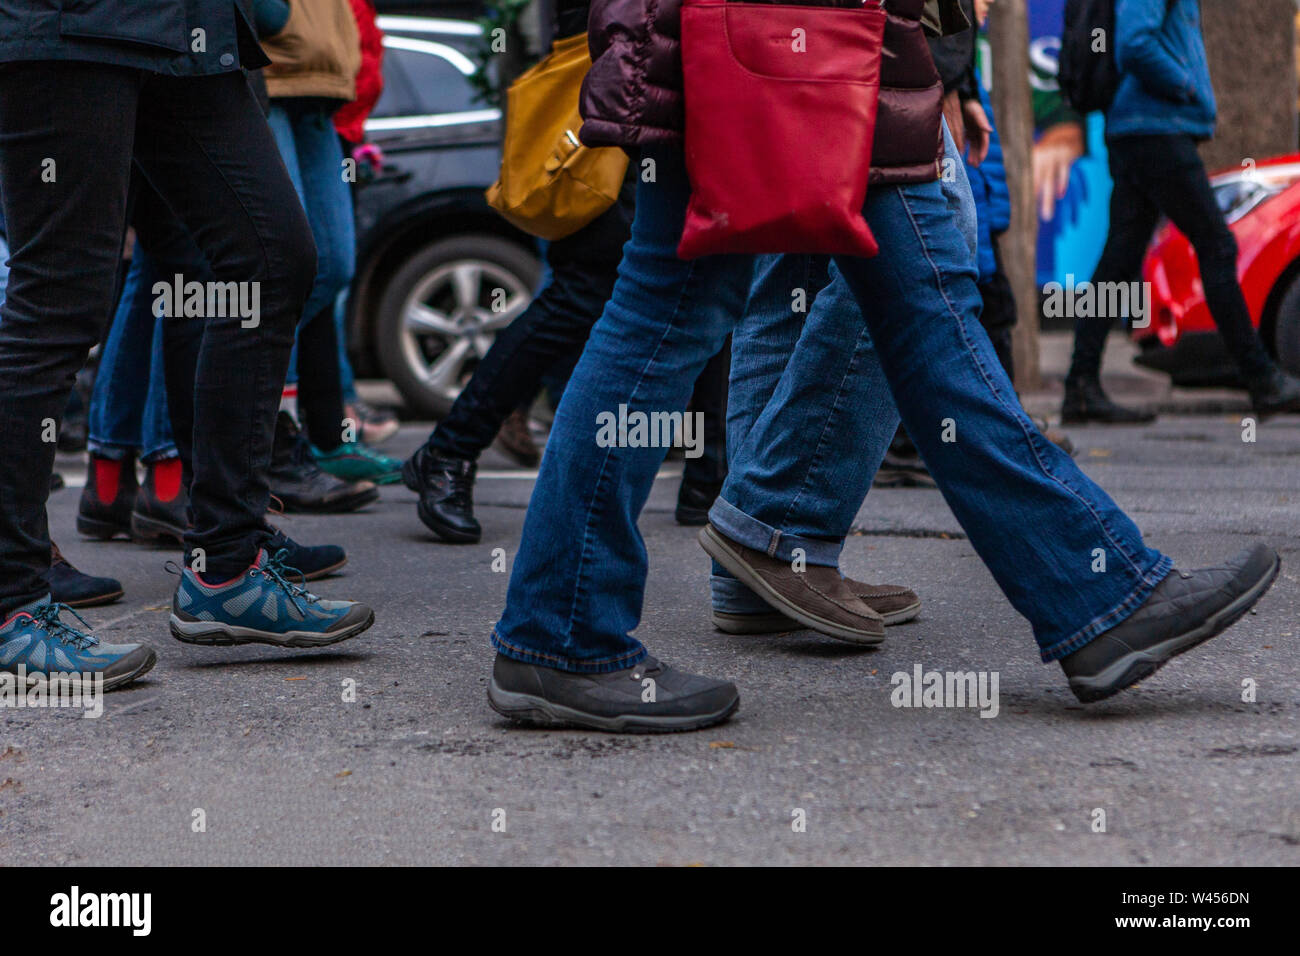 Molte le gambe sono visualizzati in marcia in un centro città come ambientalisti dimostrare insieme, vivace scena di strada nel corso di una protesta della comunità. Foto Stock